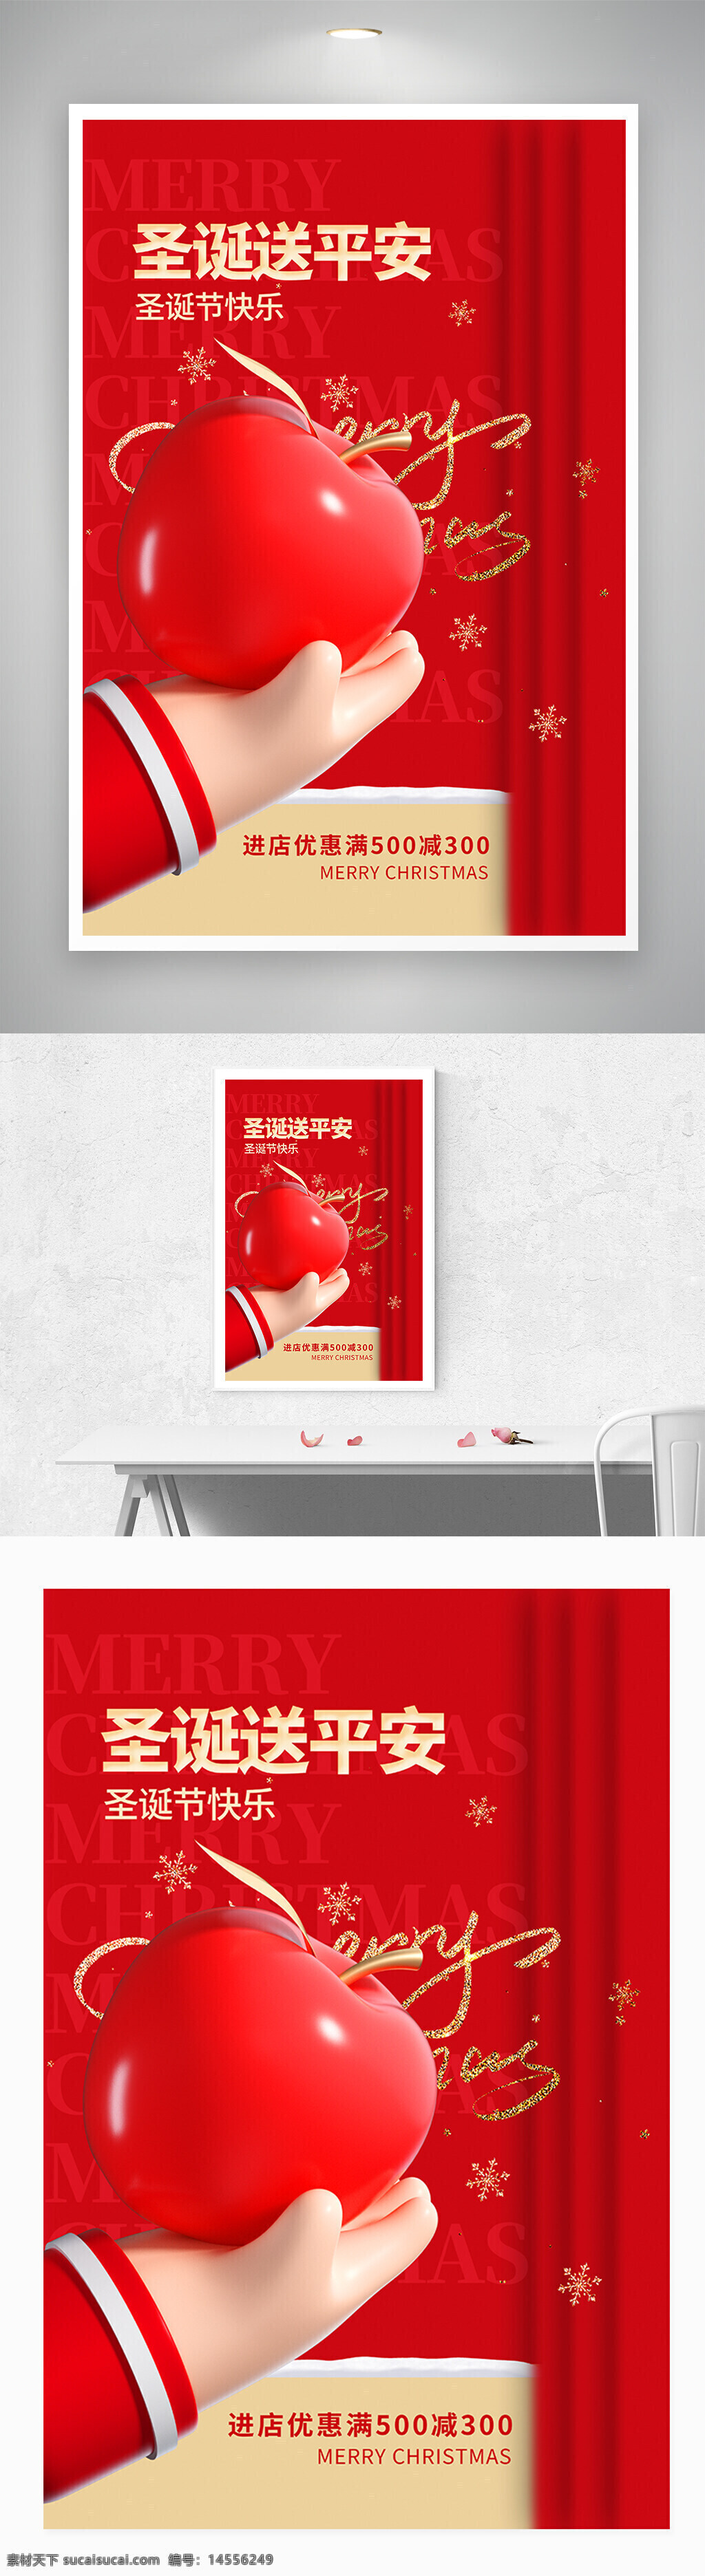 3d 红色 圣诞节 平安夜 宣传 促销 海报 设计